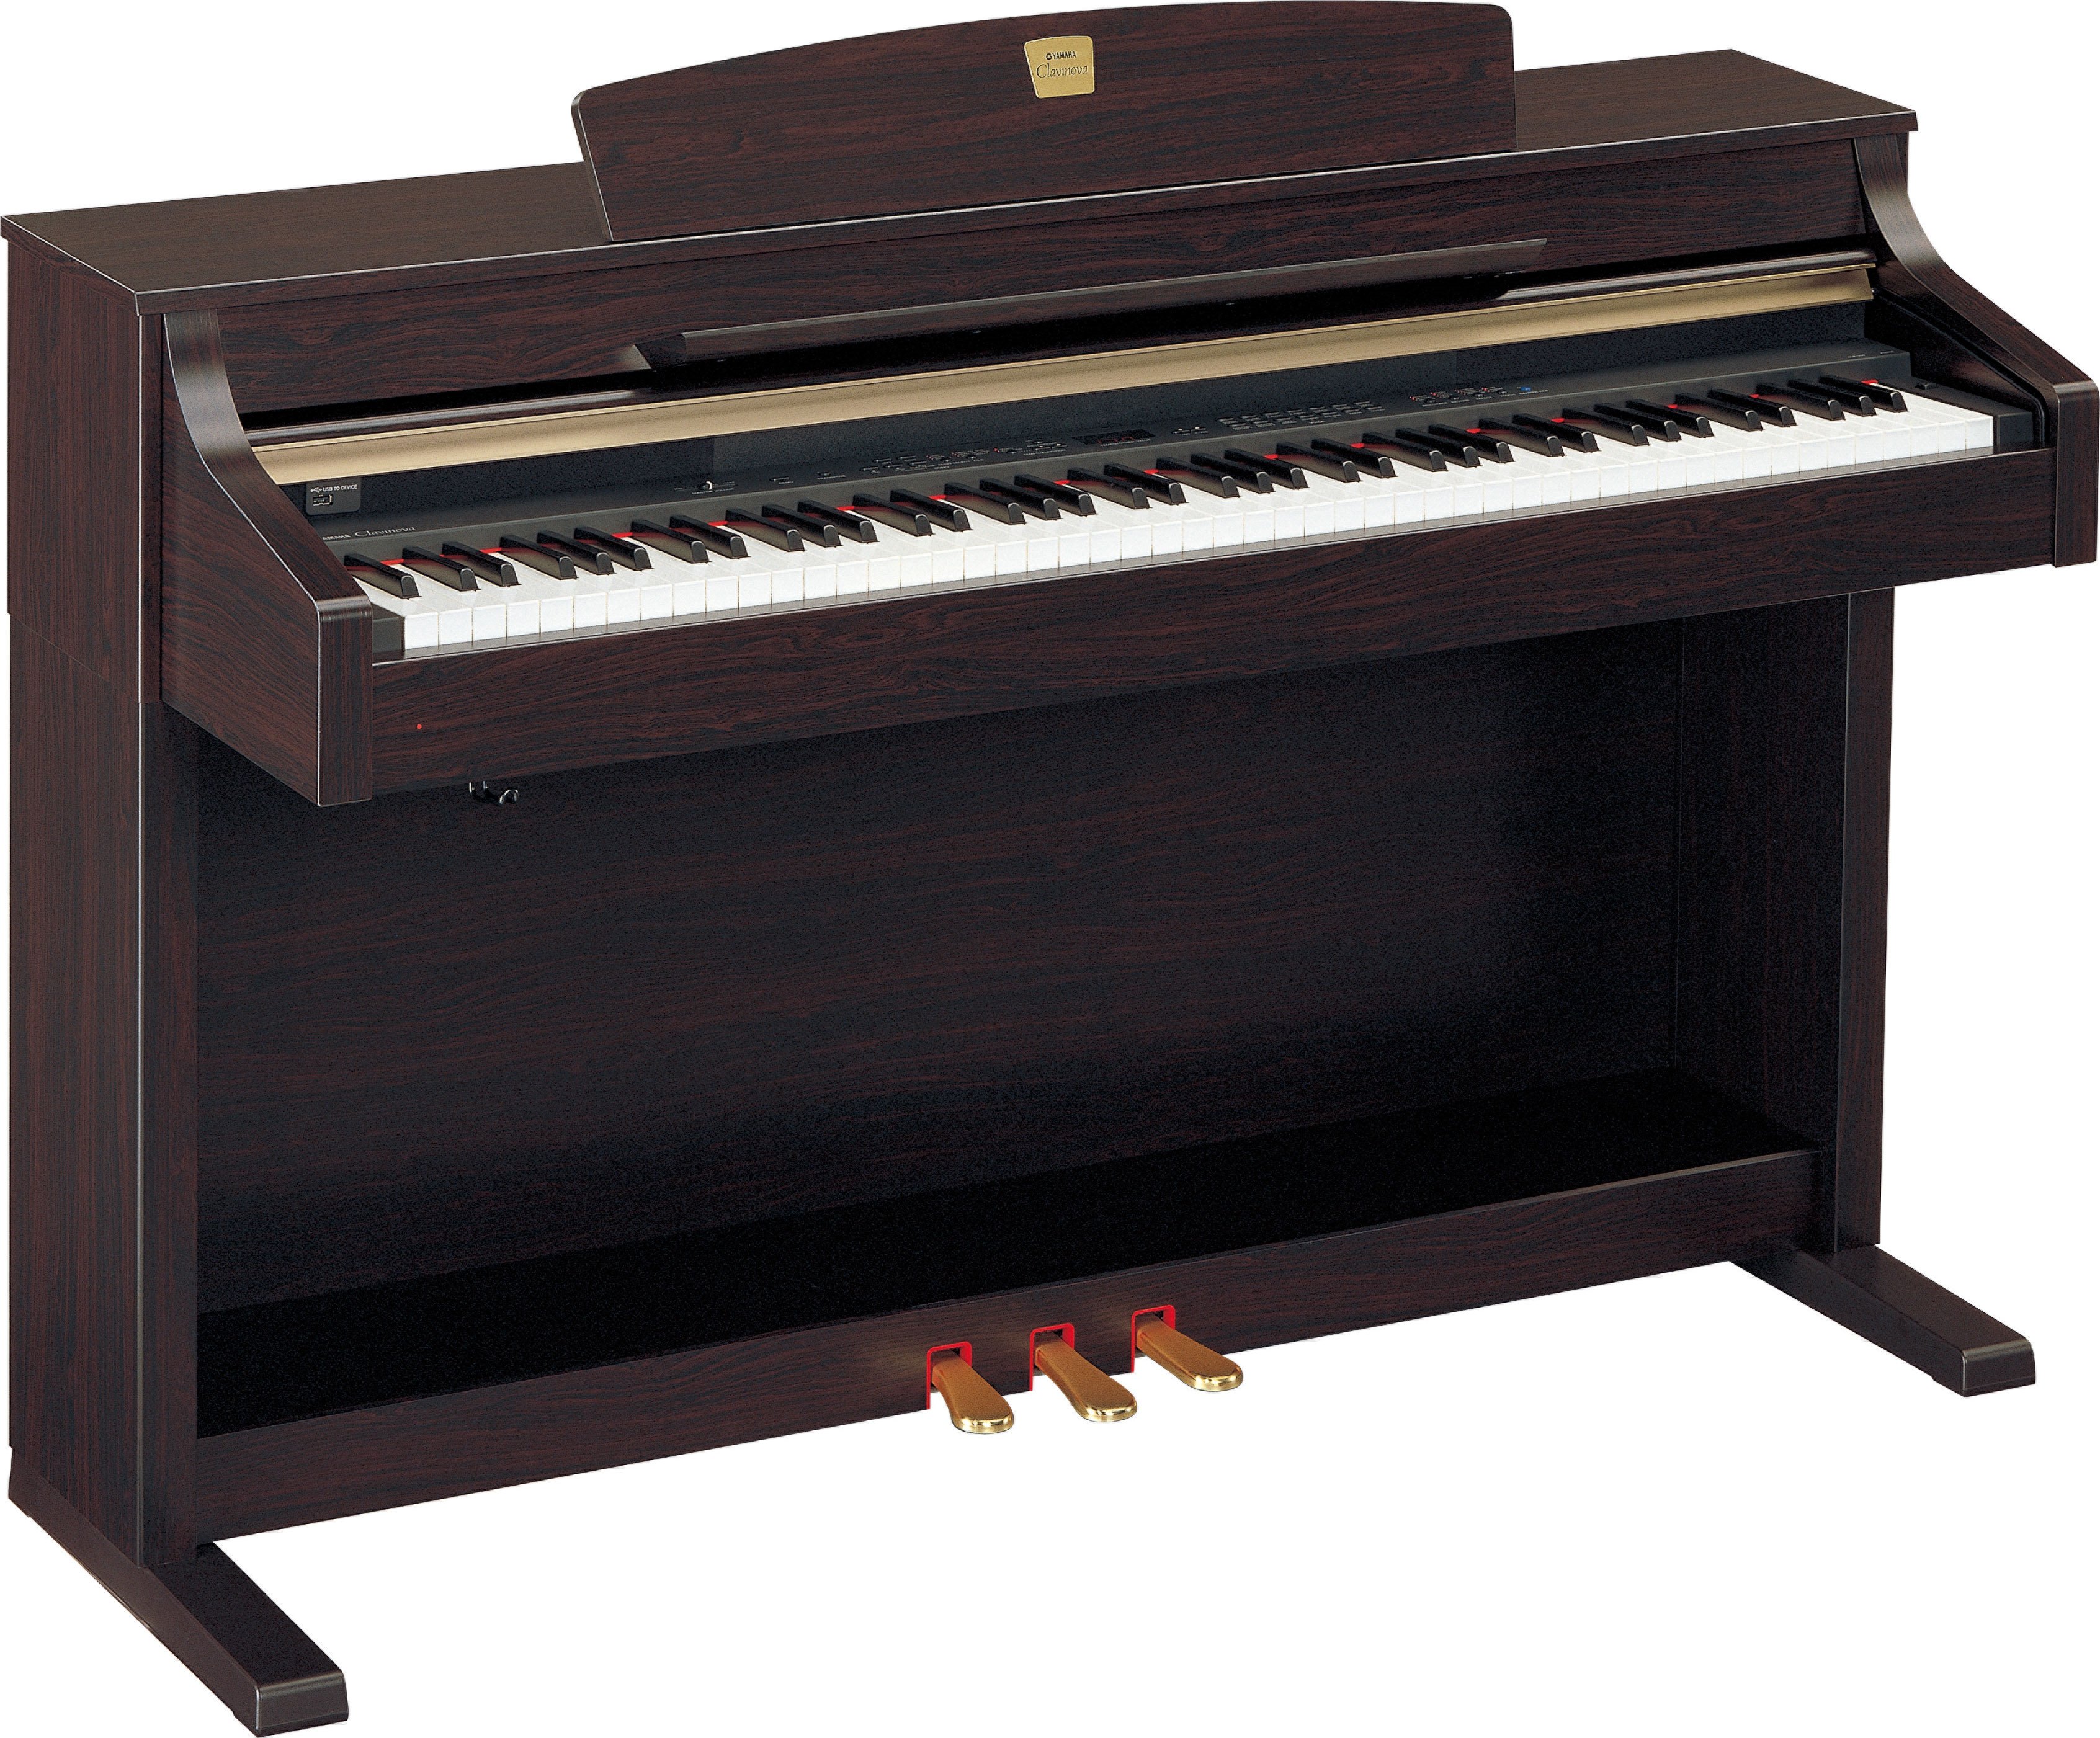 【大阪買い】ヤマハ 電子ピアノ CLP-330 C クラビノーバ 椅子付き YAMAHA 音 器 鍵盤 16N01861 ヤマハ